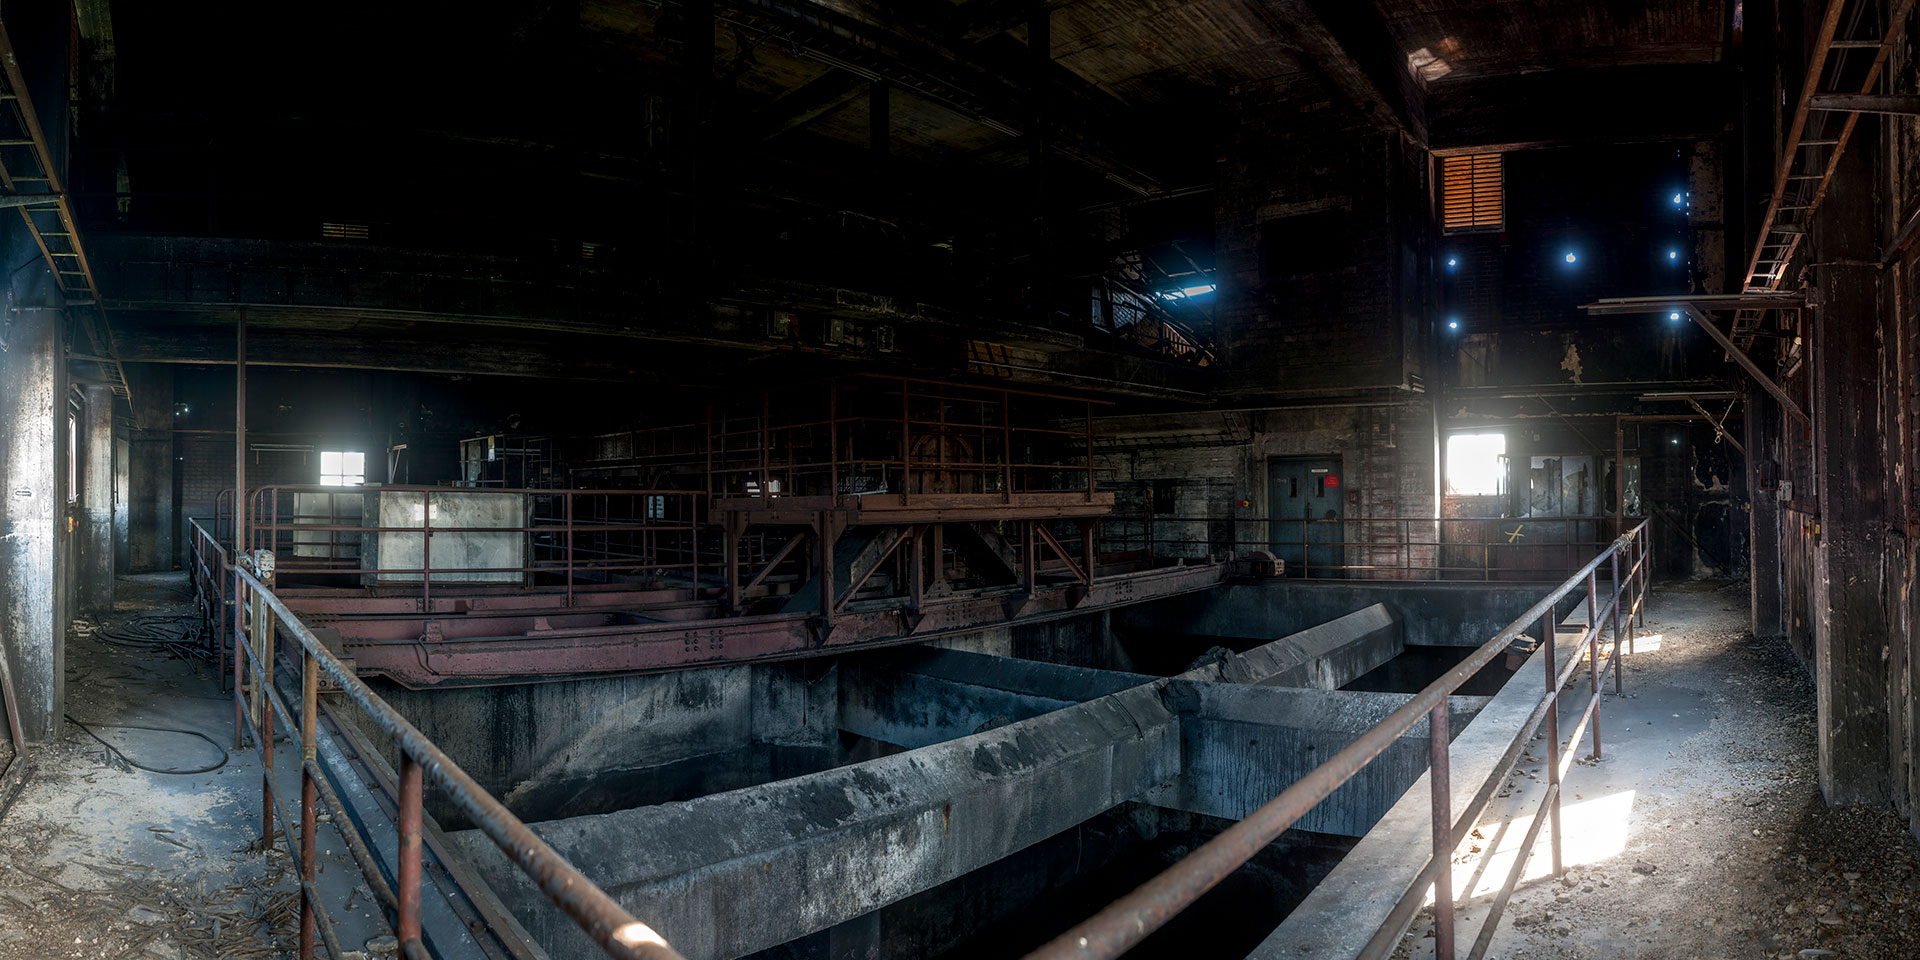 Kohleturm | Kokerei Zollverein - Essen - Deutschland